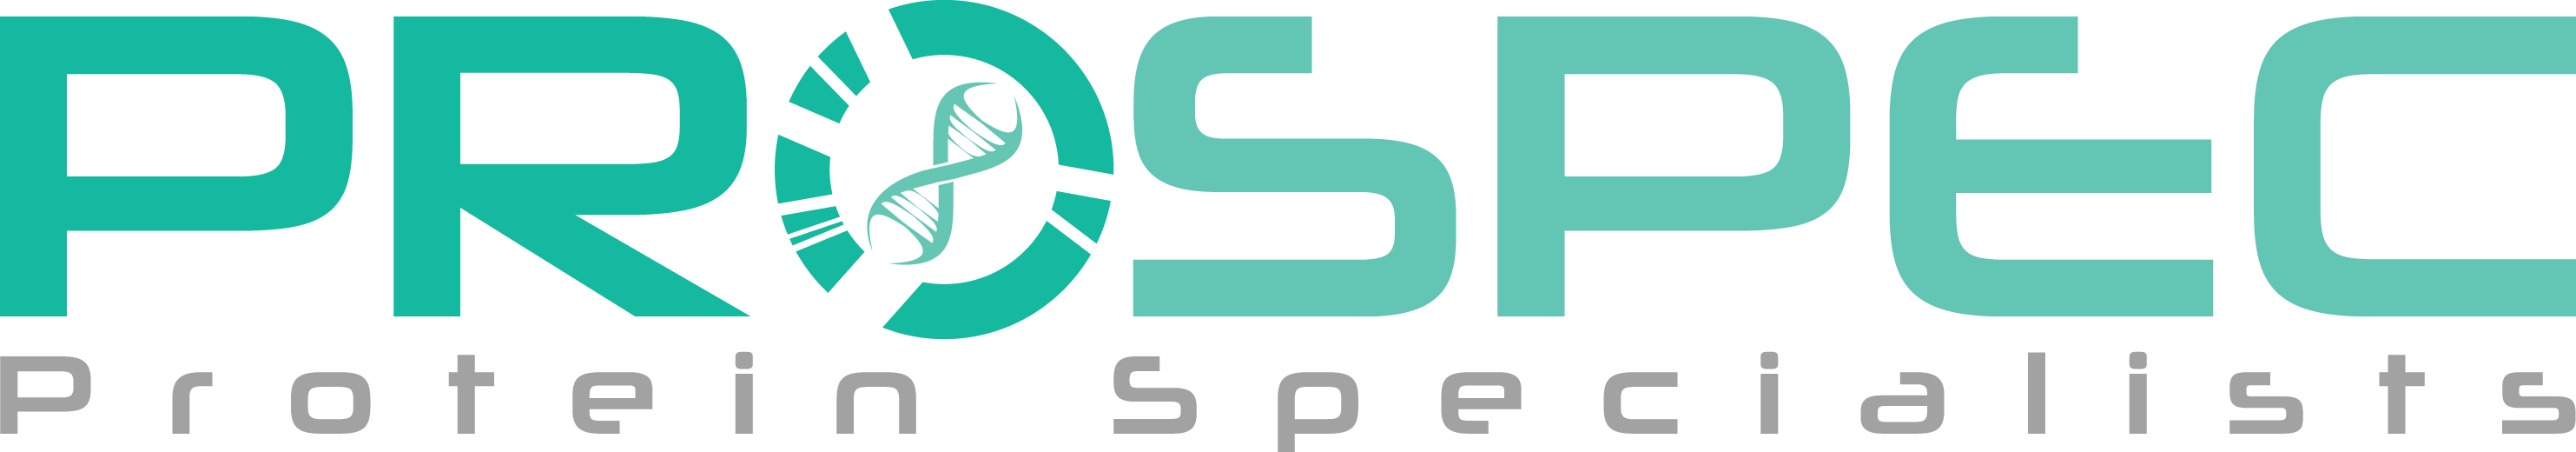 ProSpec-Tany TechnoGene Ltd.